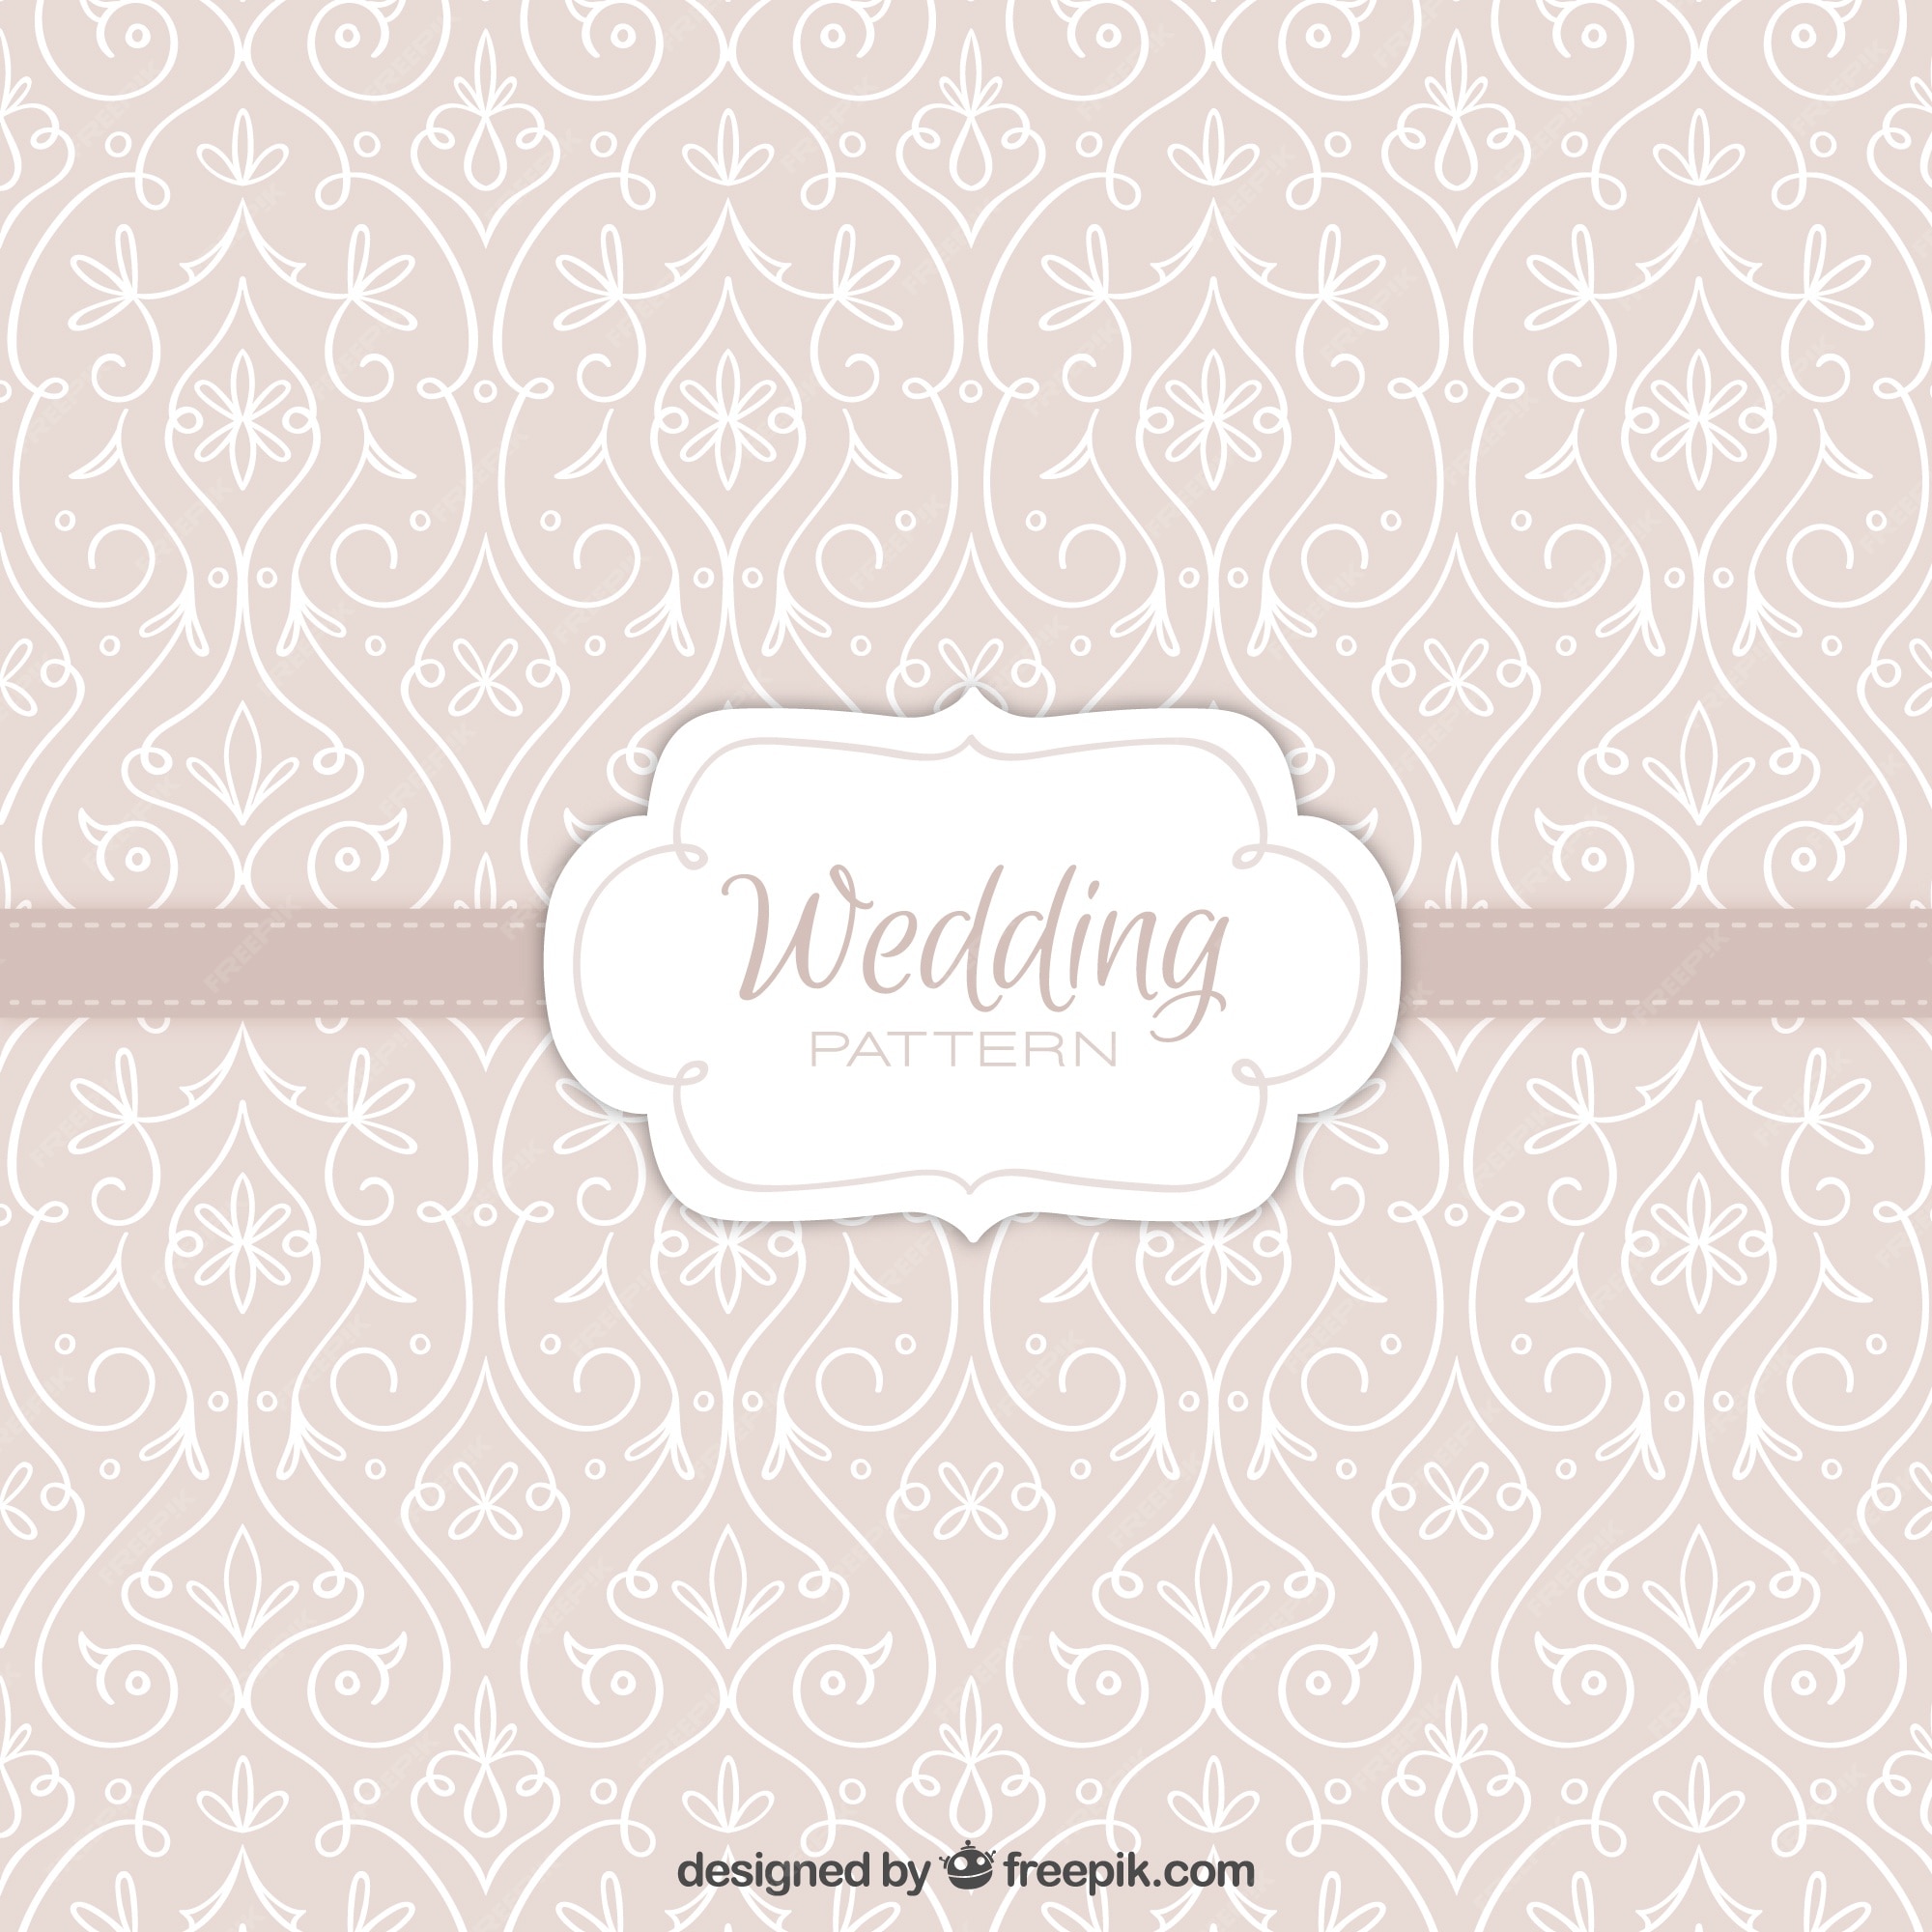 Wedding Patterns Images - Free Download on Freepik